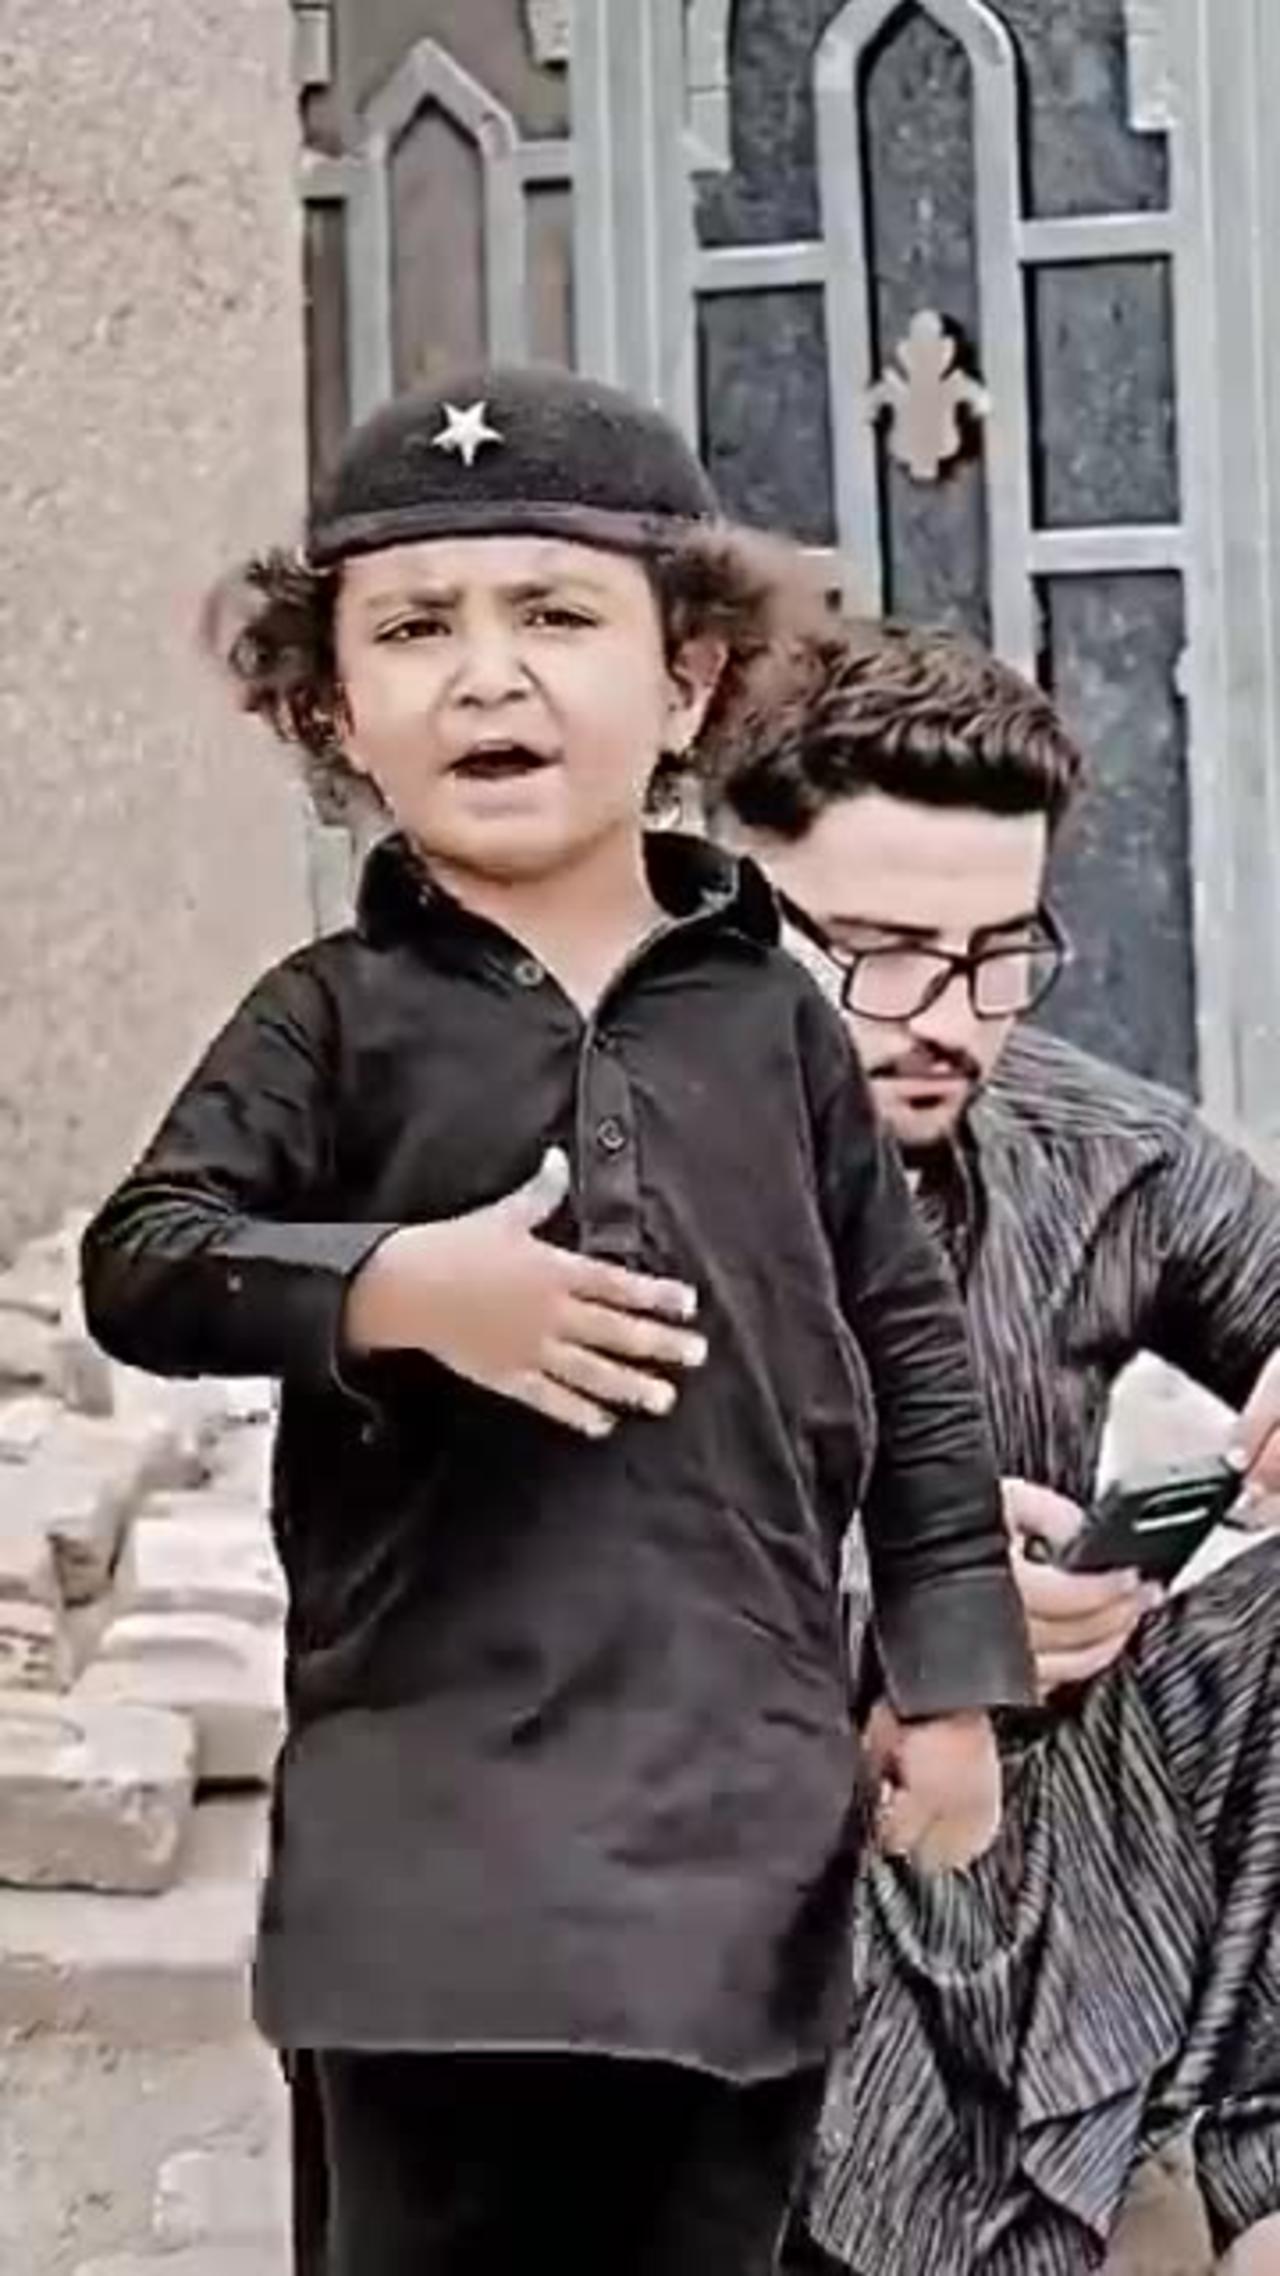 Funny Pakistani kid videos